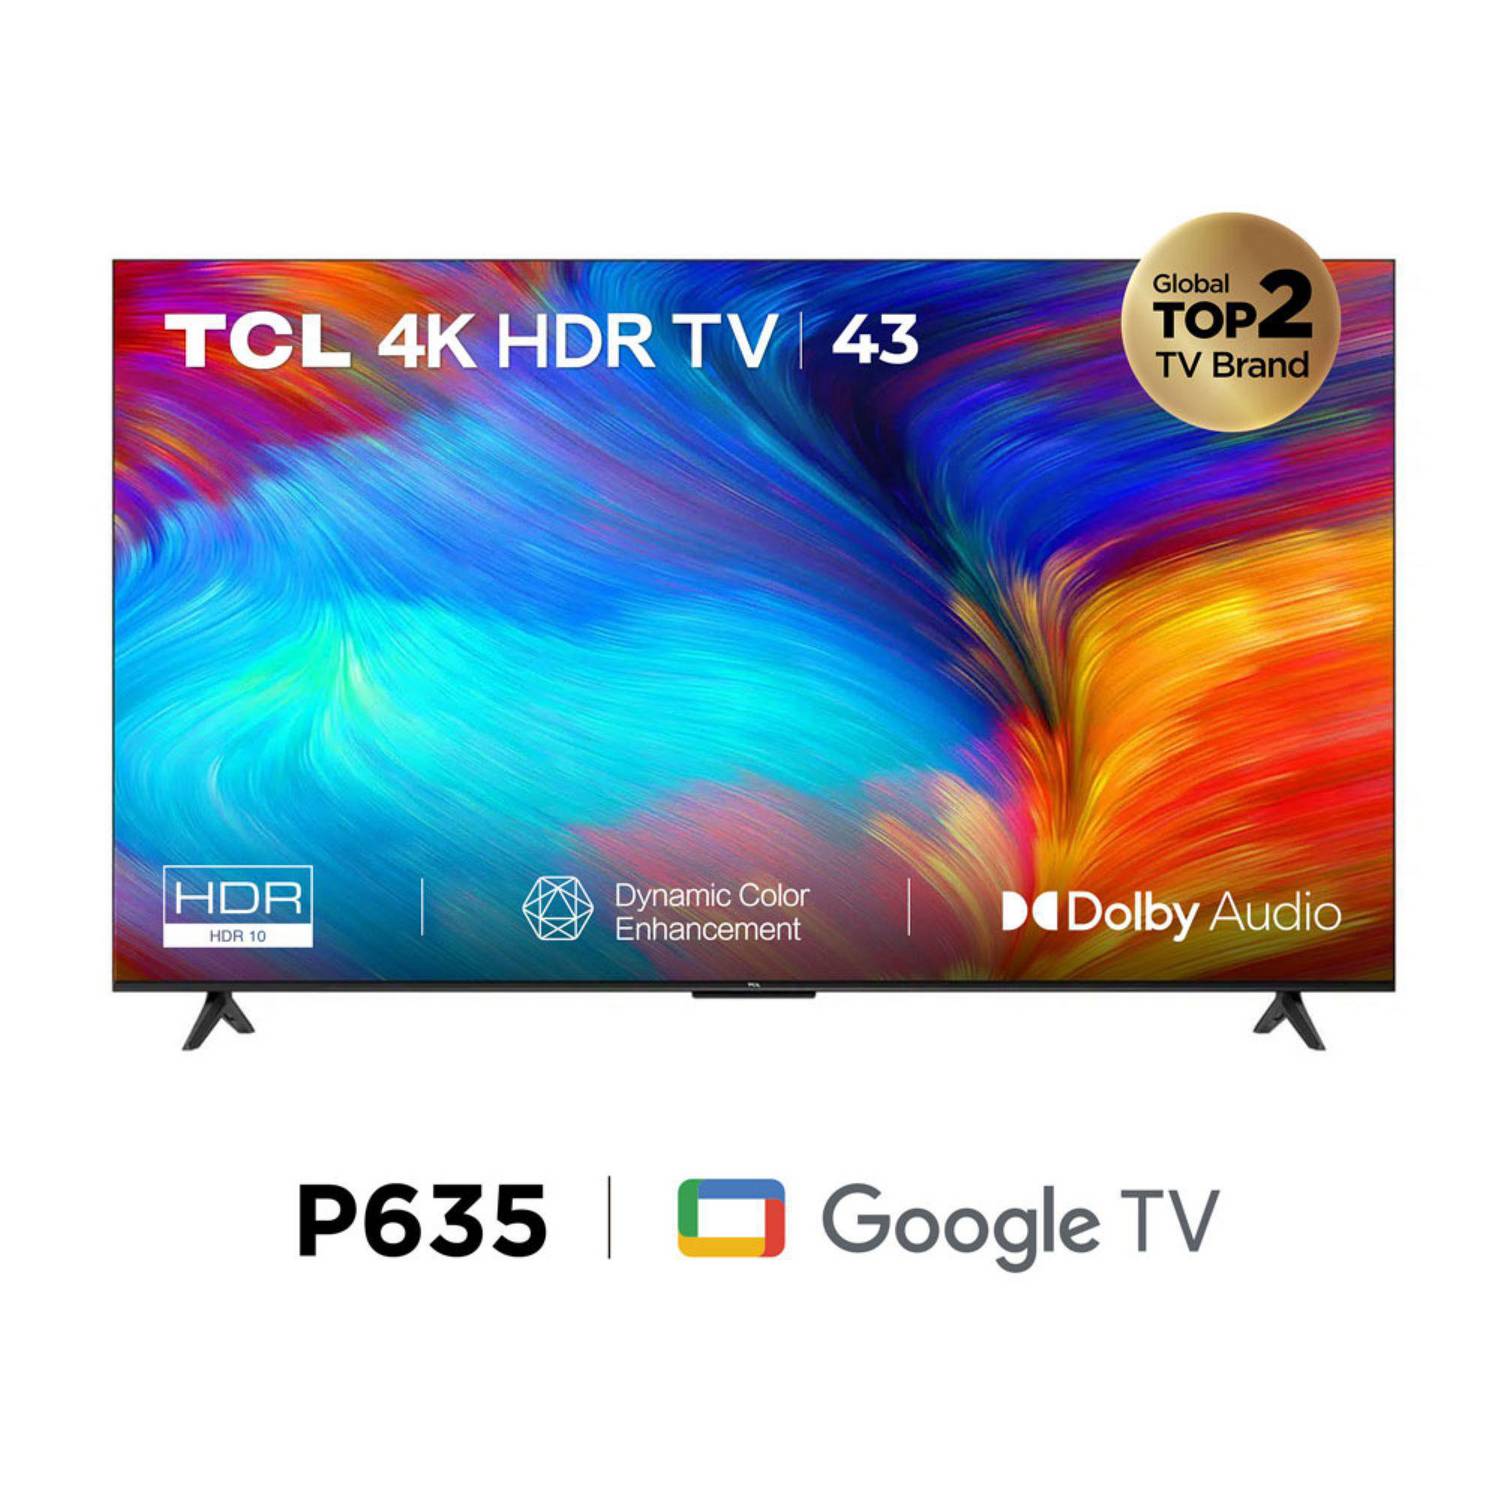 Televisor TCL 43 UHD 4K Google TV 43P635